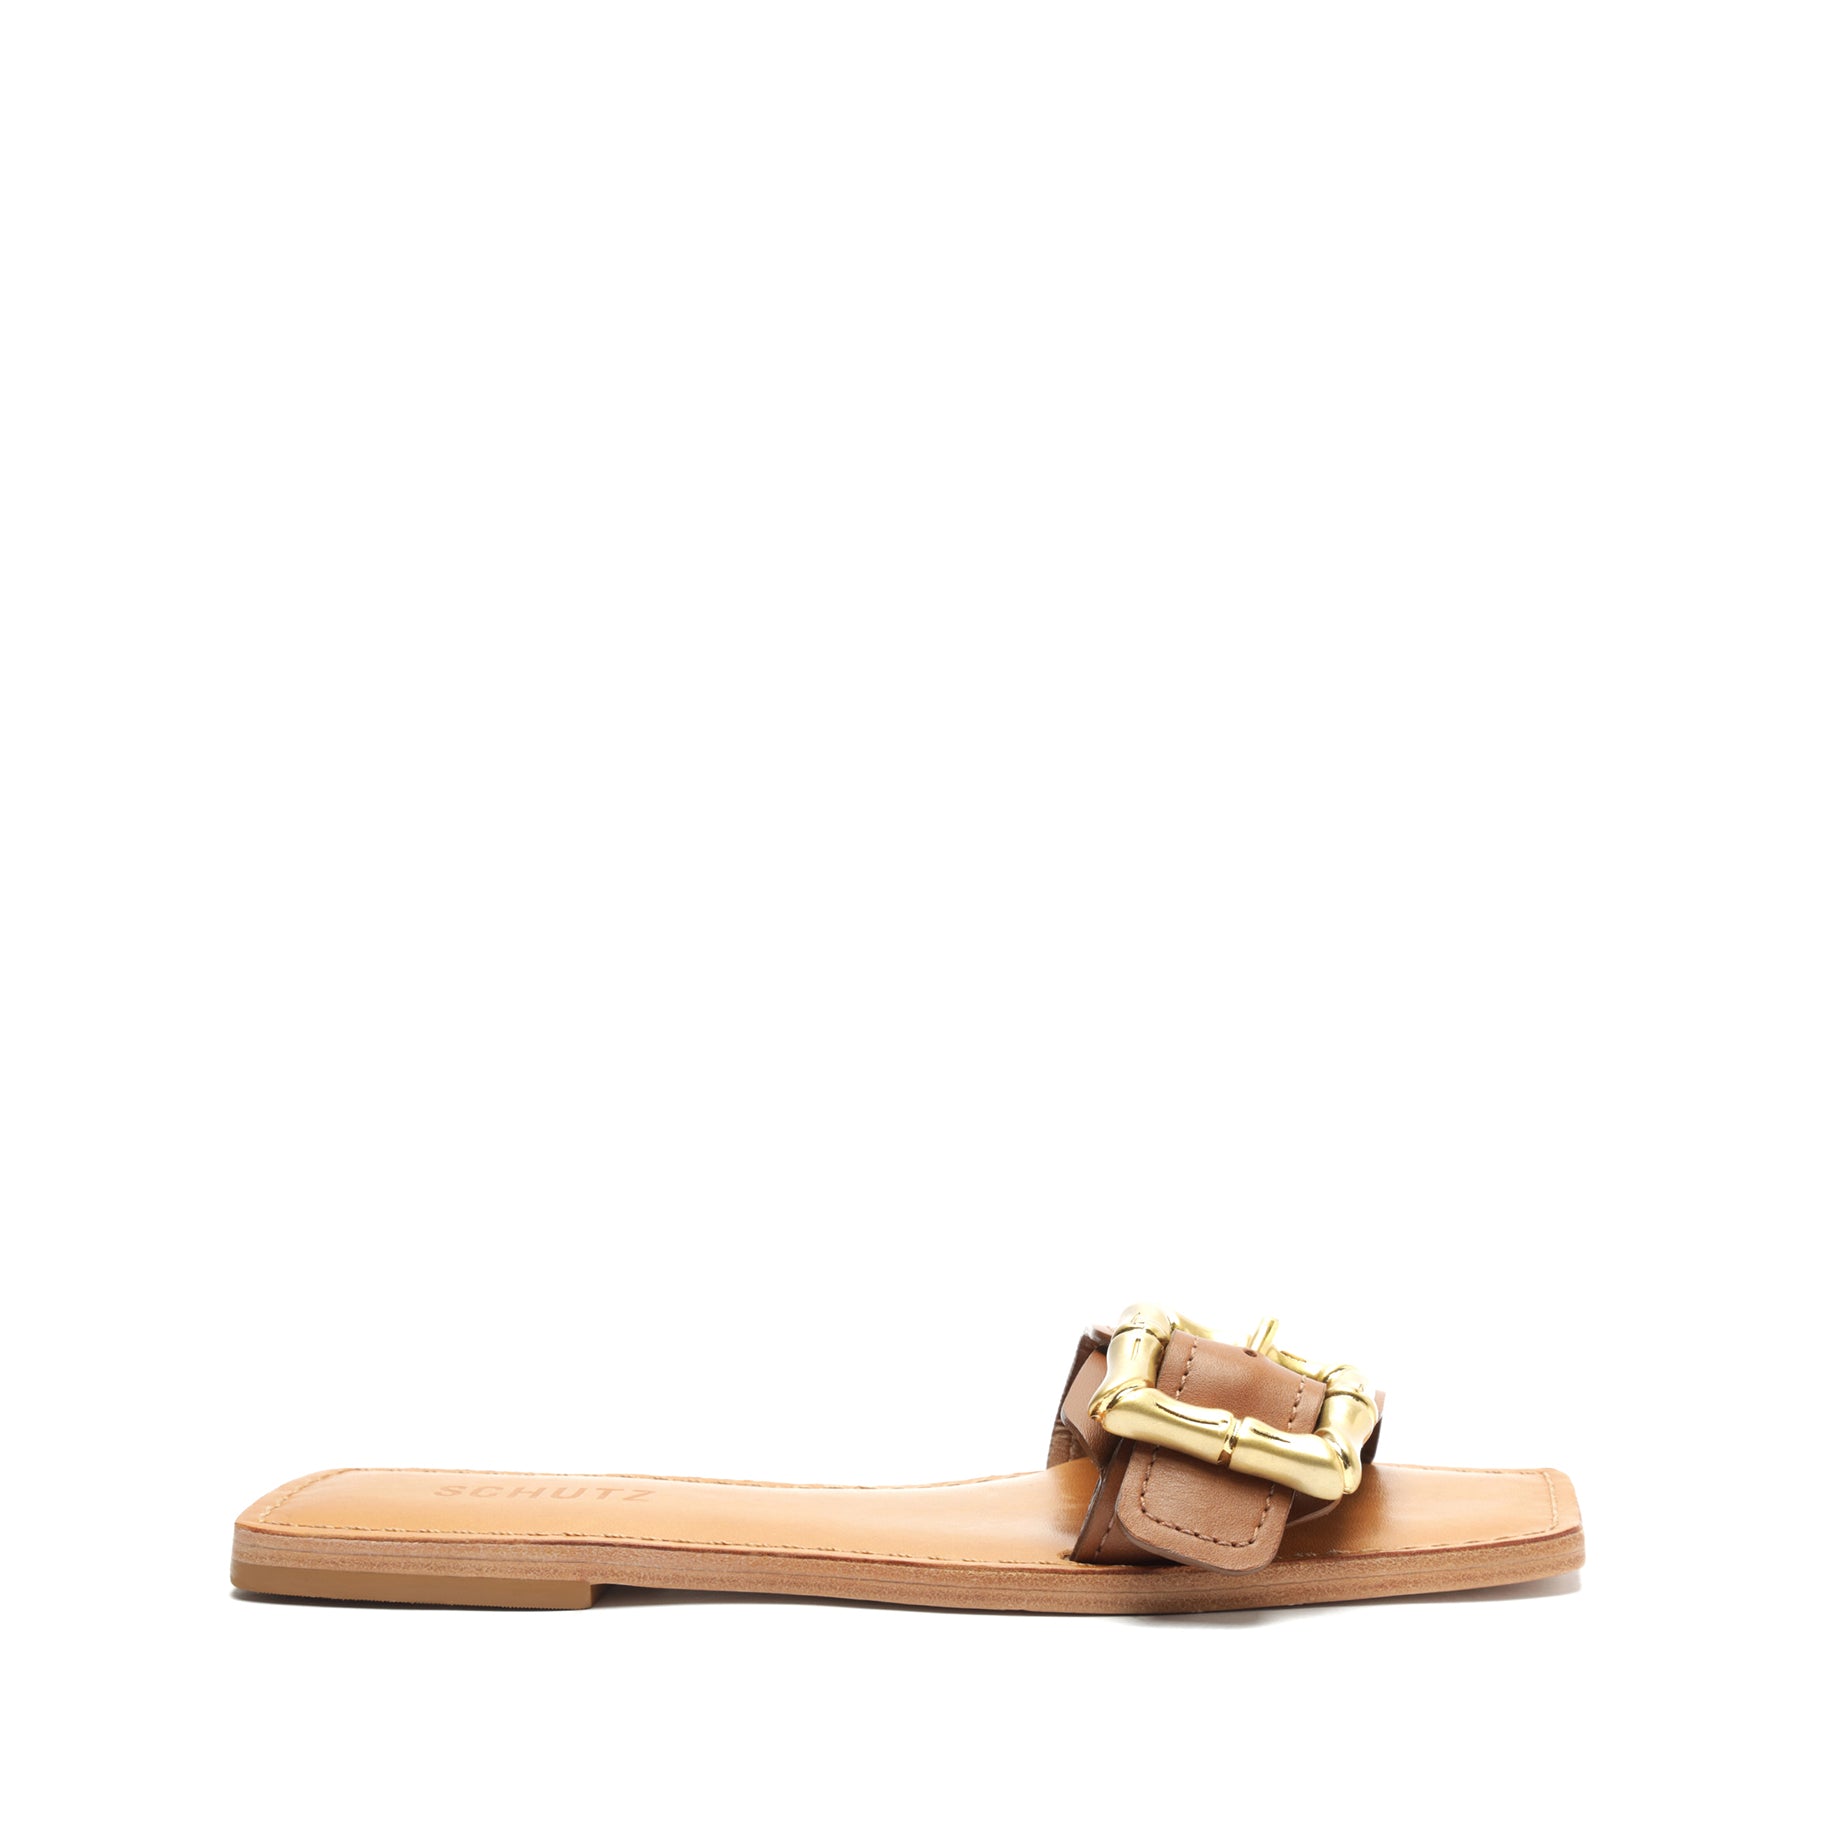 10mm Leather Slide Sandals